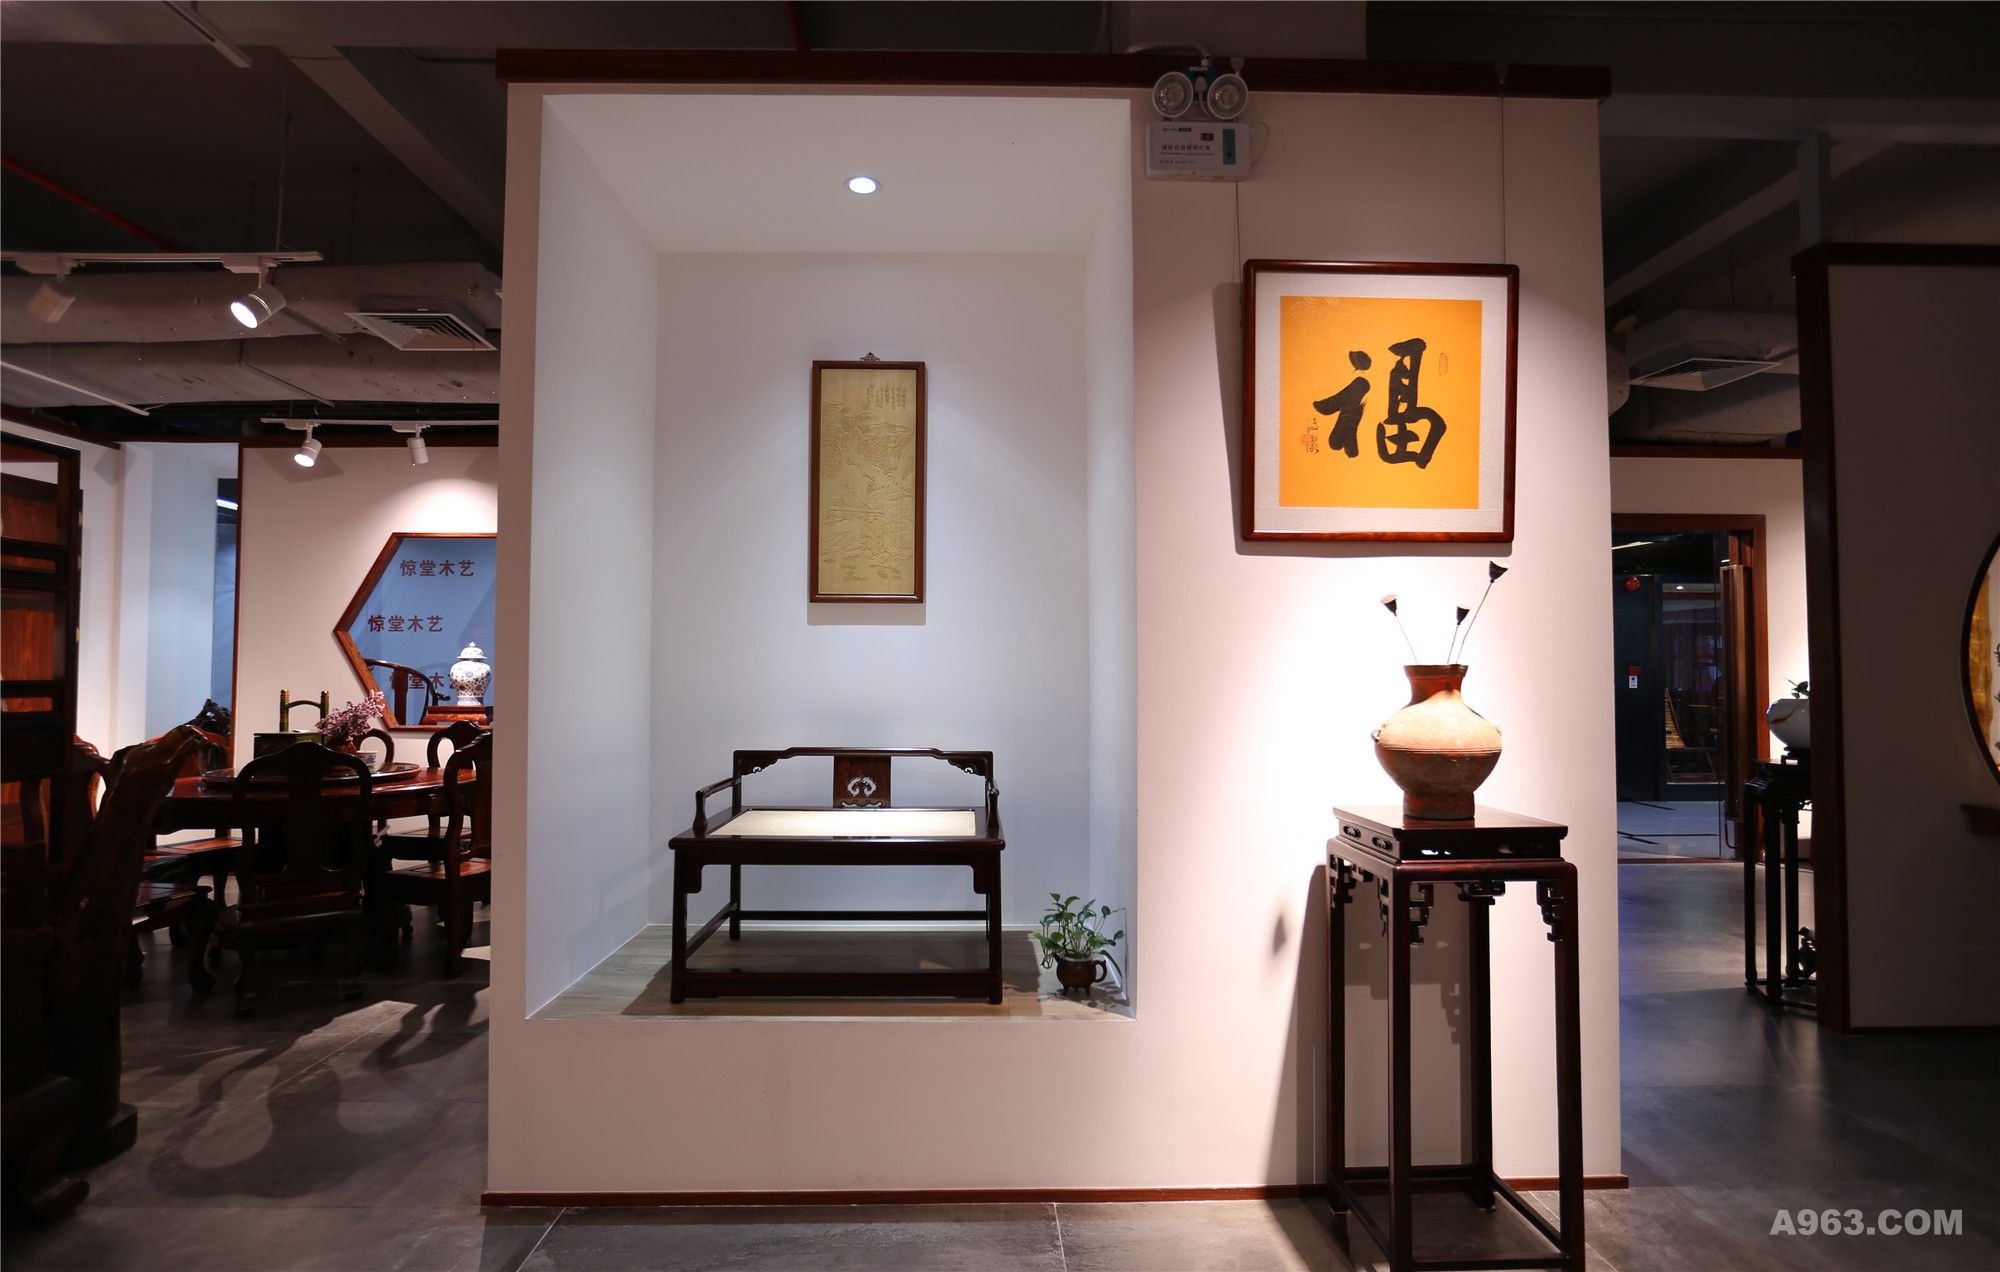 龙熙堂红木艺术展厅说明: 简洁的中国建筑元素, 烘托出中式红木家 